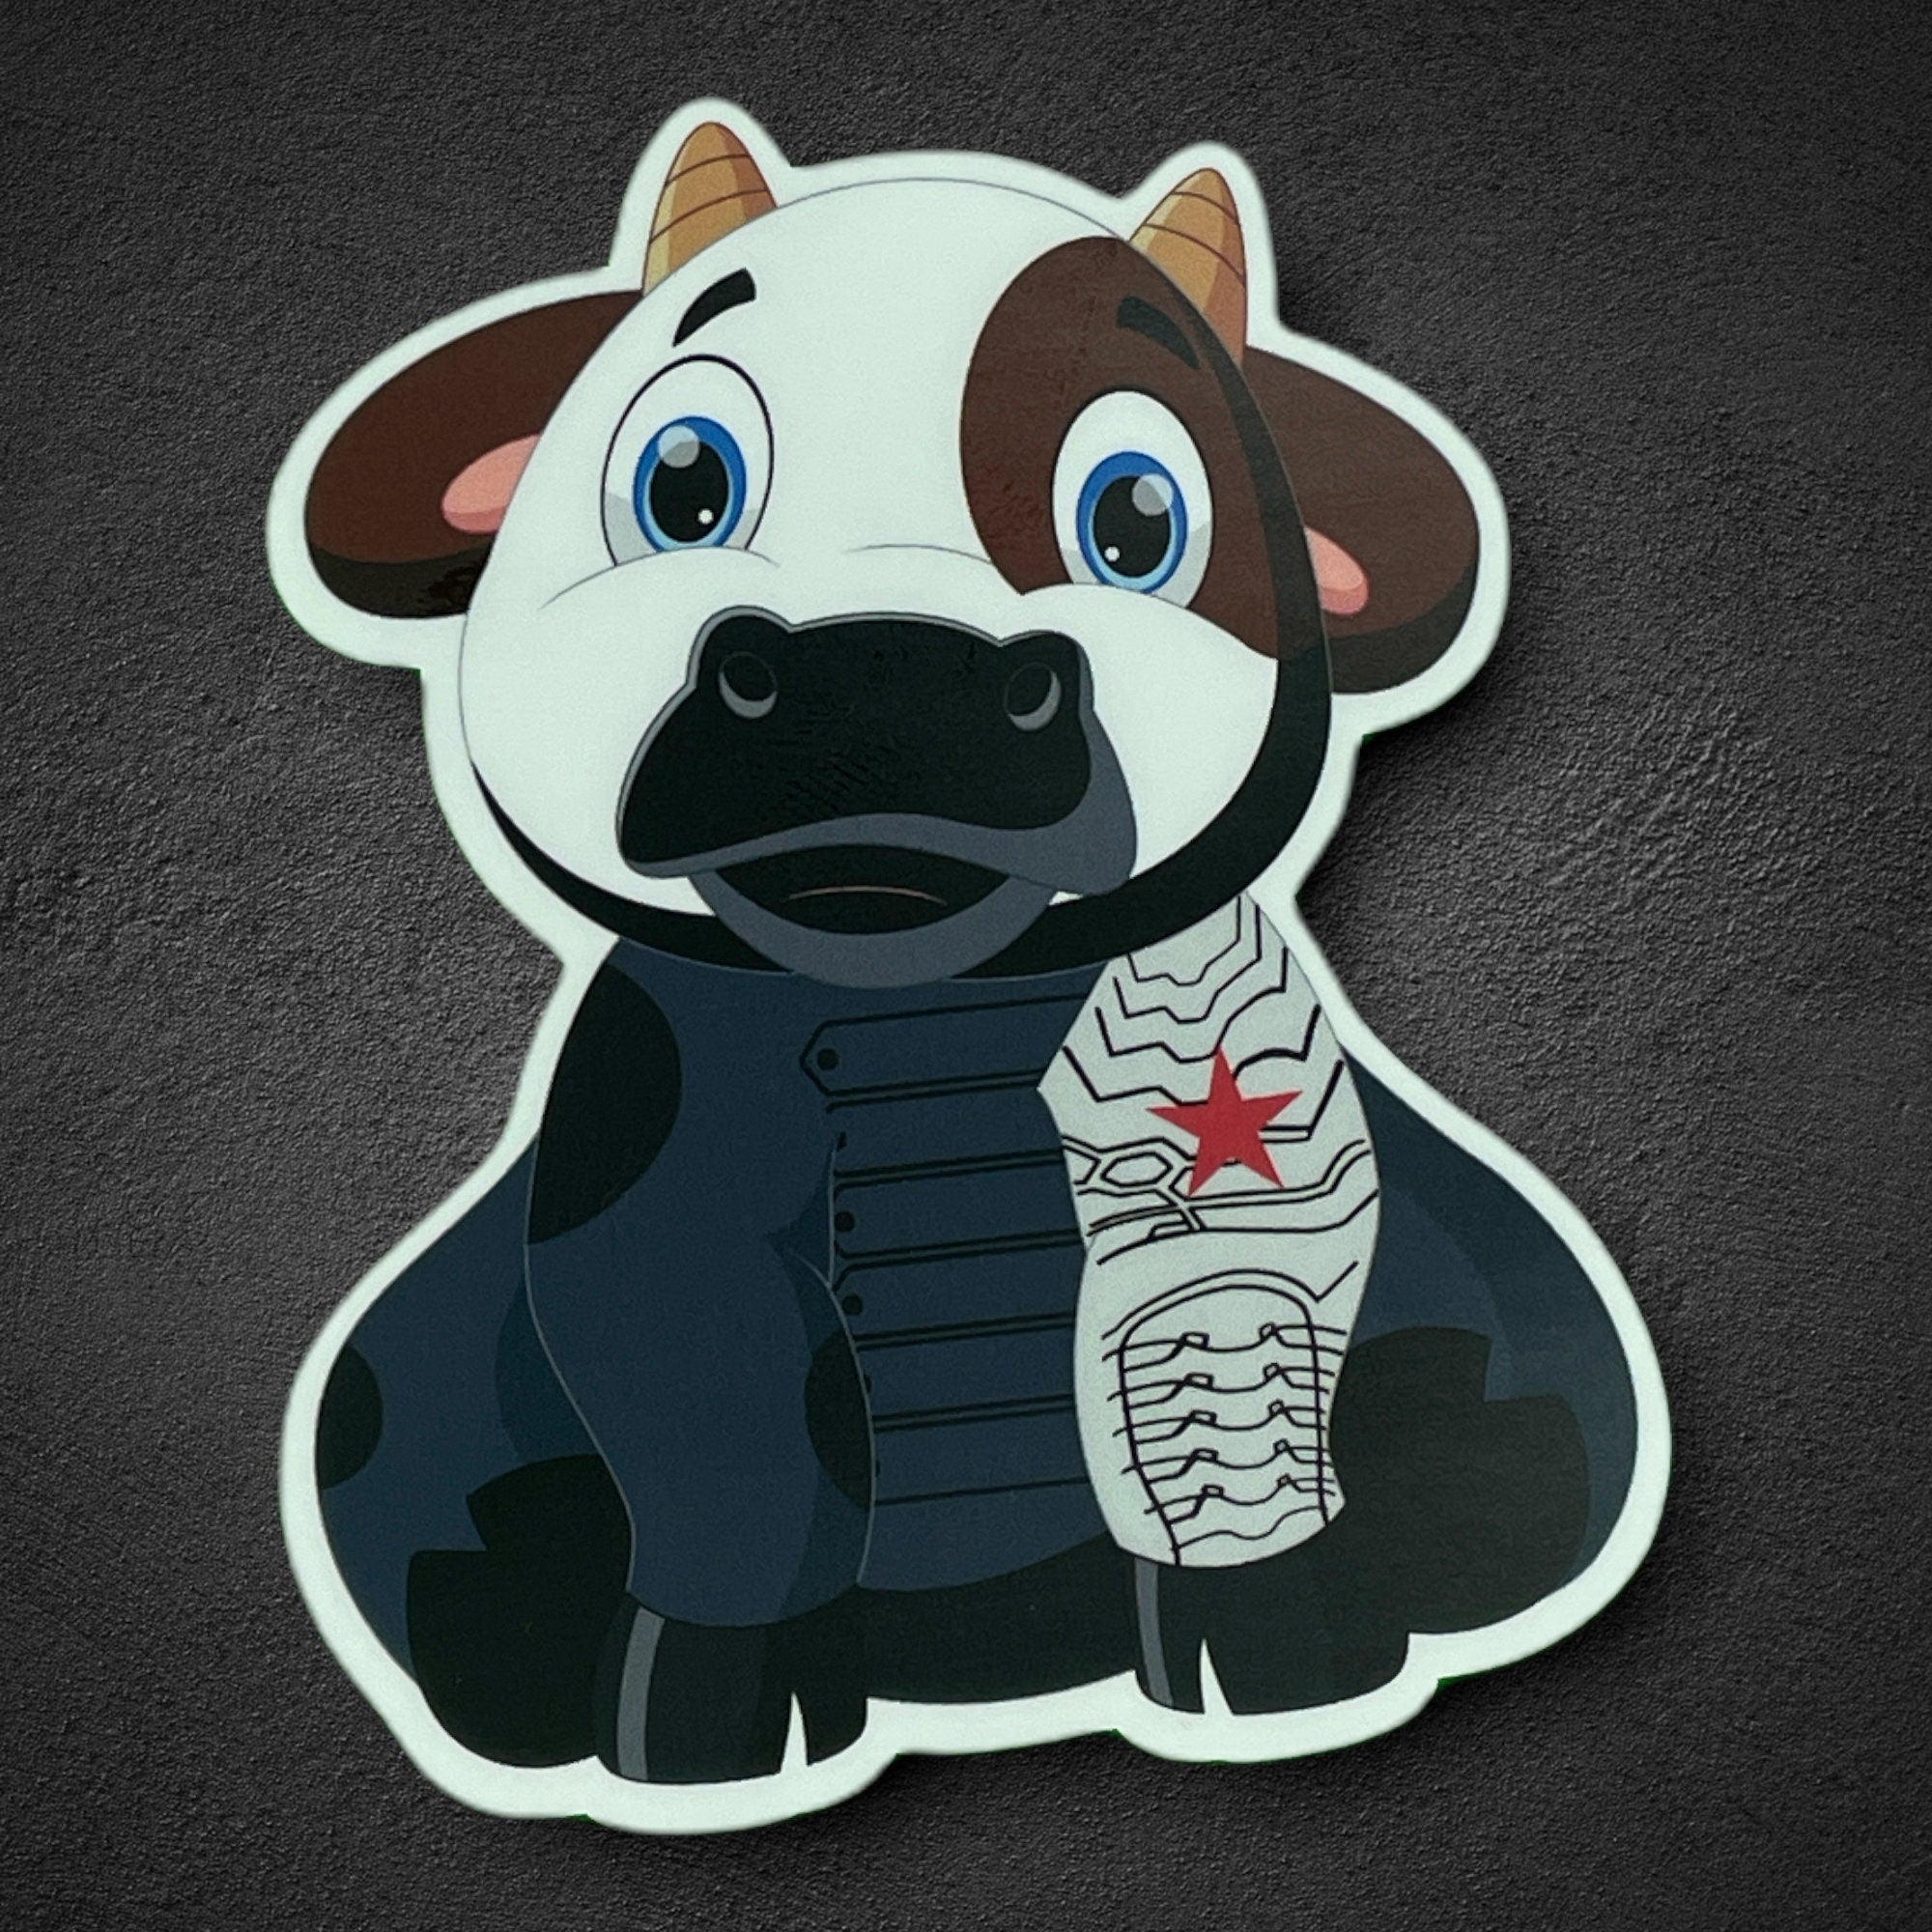 Winter Soldier/Bucky Cow Sticker